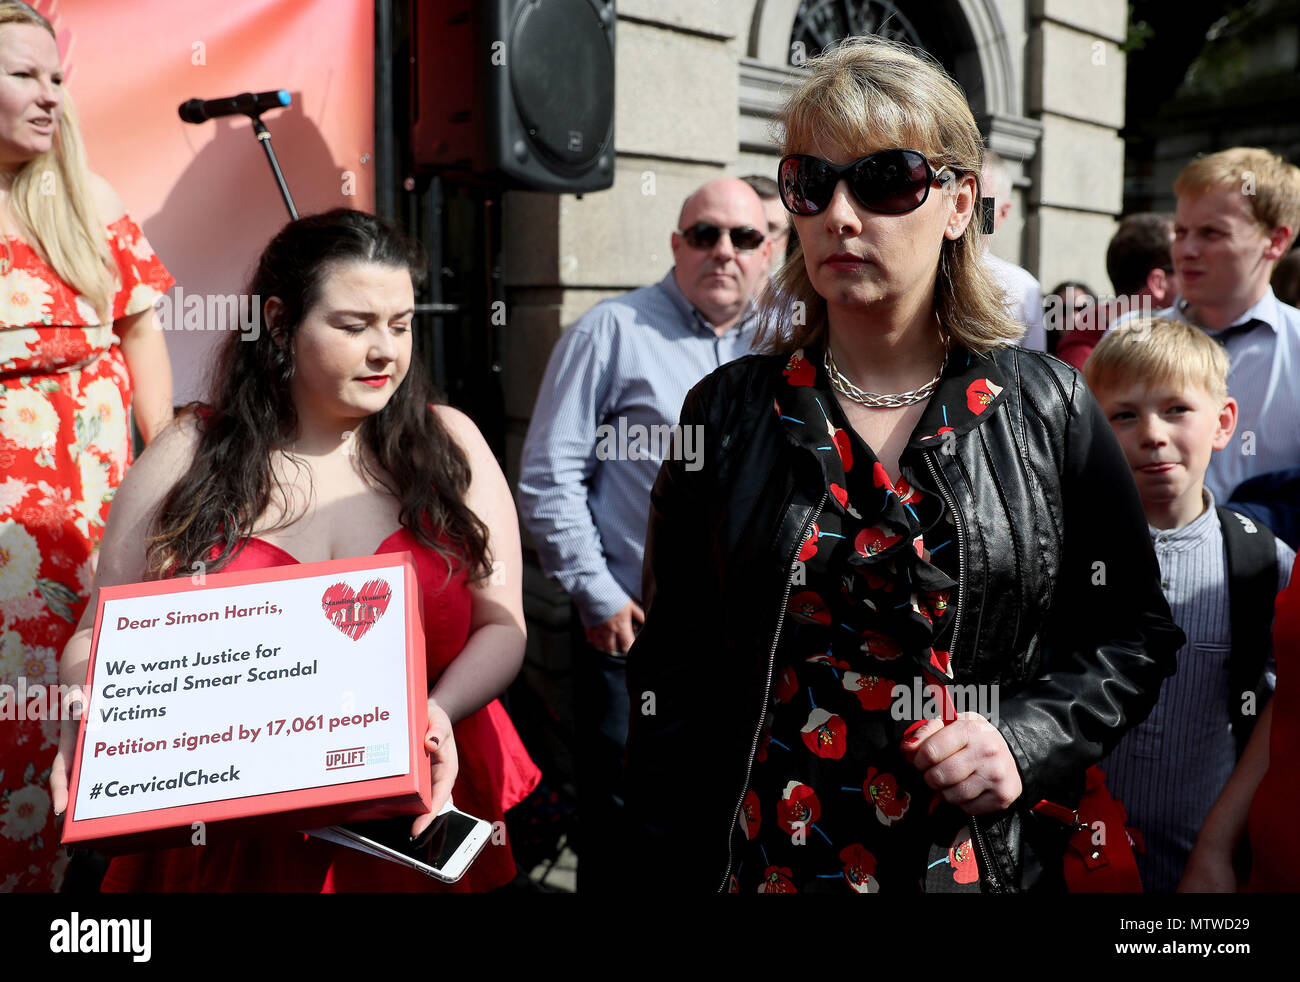 Emma Mhic Mhathoena (centre) lors d'une manifestation à Leinster House, Dublin, dans le cadre d'une journée d'action organisée par 4 montons des femmes en solidarité avec les femmes concernées par l'CervicalCheck scandale. Banque D'Images